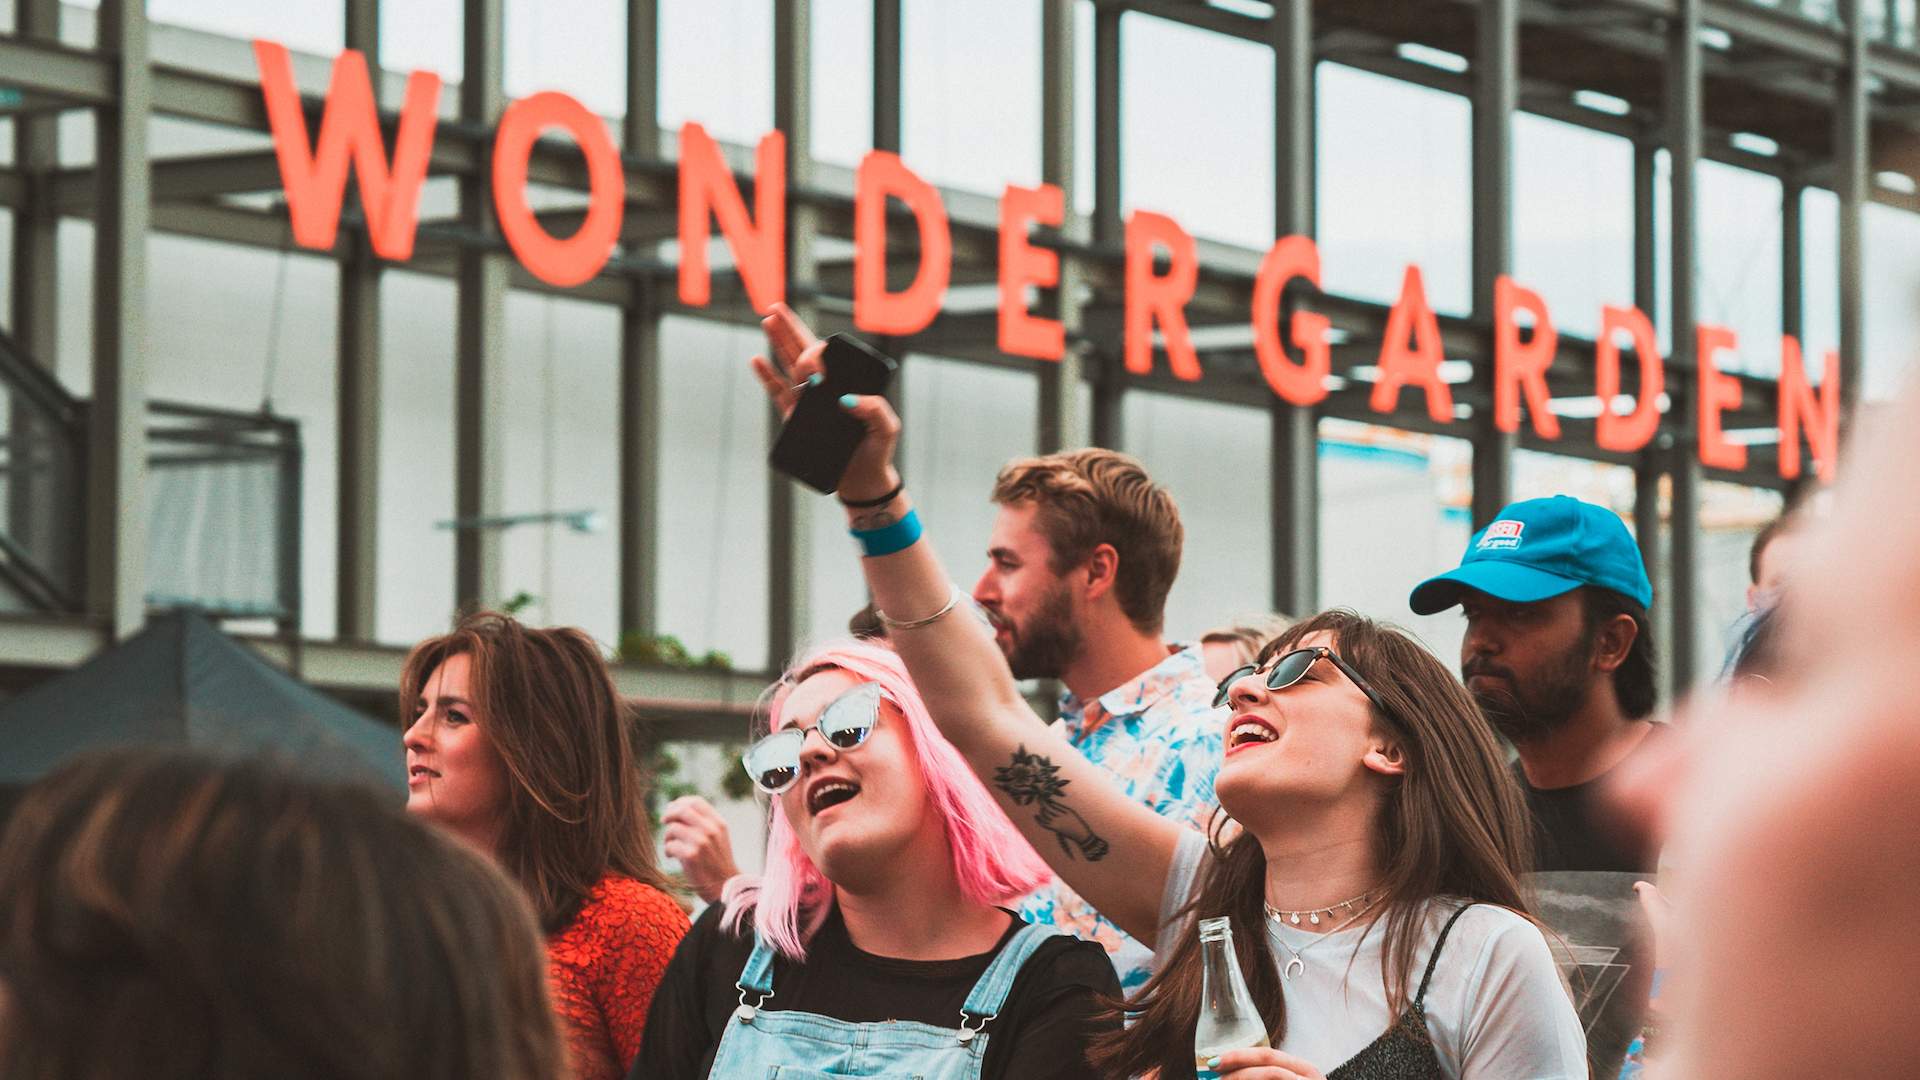 Waterfront Music Festival Wondergarden Returns for 2018